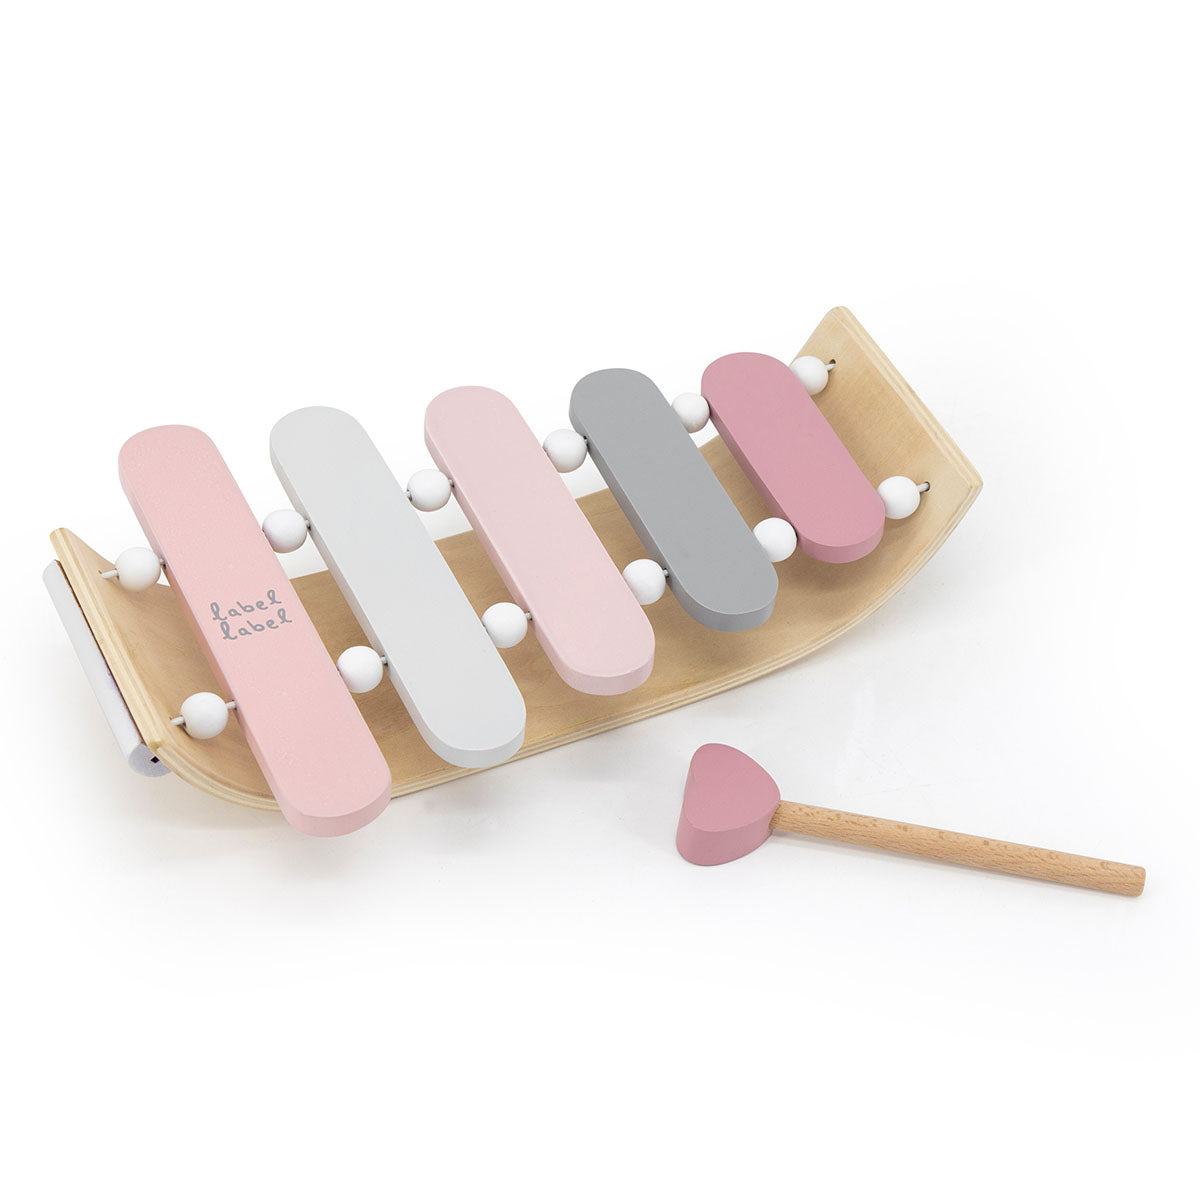 Ziet jouw kindje overal muziek in? Dat komt mooi uit want met de Label Label xylofoon roze haal je een prachtig eerste muziekinstrumentje in huis. De xylofoon is van FSC-hout, heeft 5 klankstaven en een stokje. VanZus.